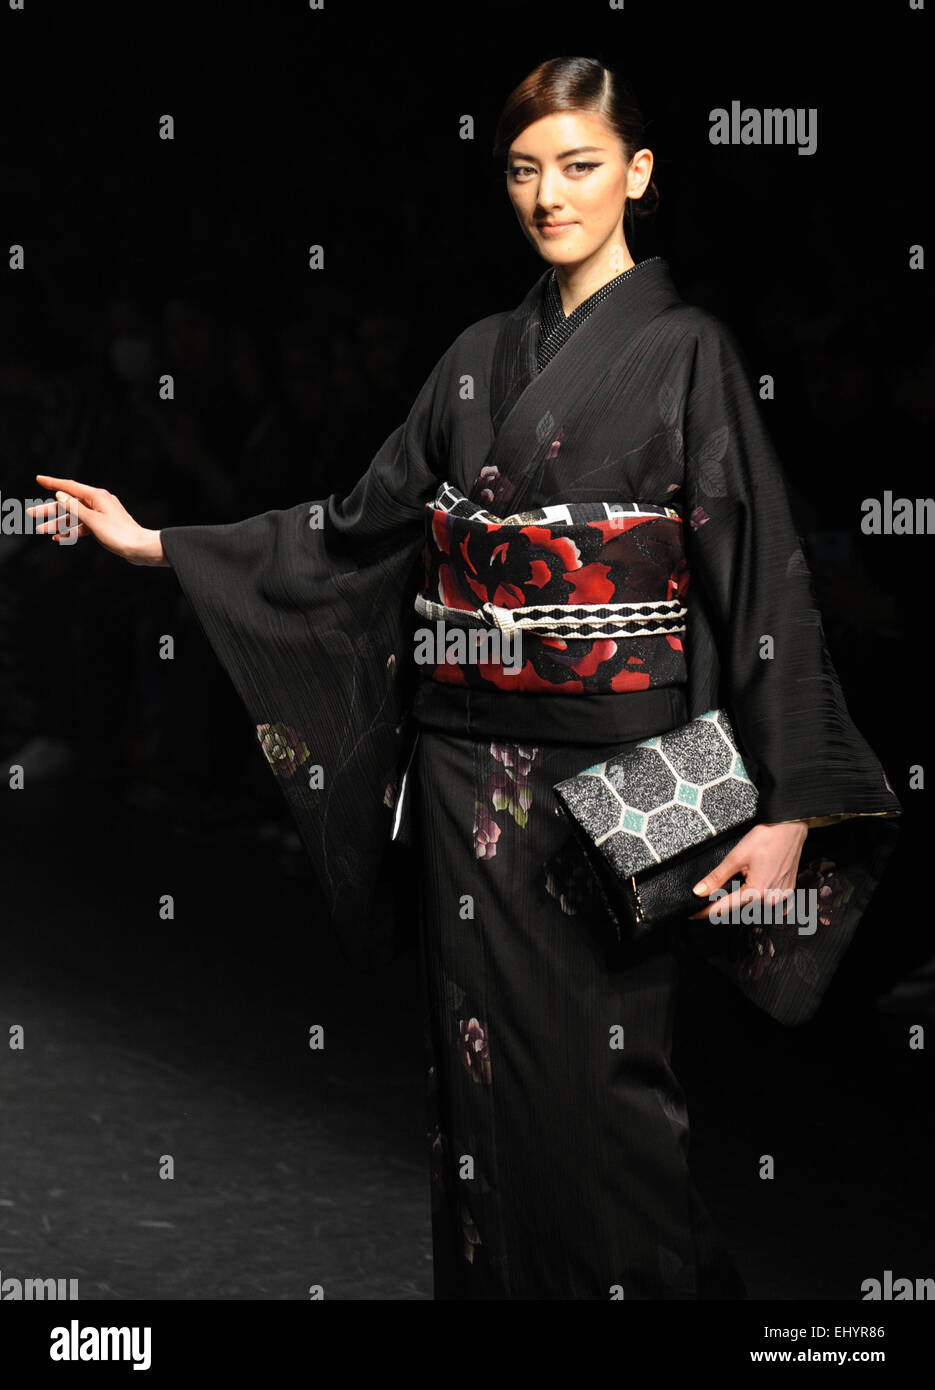 Tokio, Japón. 19 Mar, 2015. Una modelo muestra una creación diseñada por Jotaro Saito durante la Semana de la moda de Tokio 2015 colección Otoño/Invierno en Tokio, Japón, 19 de marzo de 2015. Crédito: Stringer/Xinhua/Alamy Live News Foto de stock